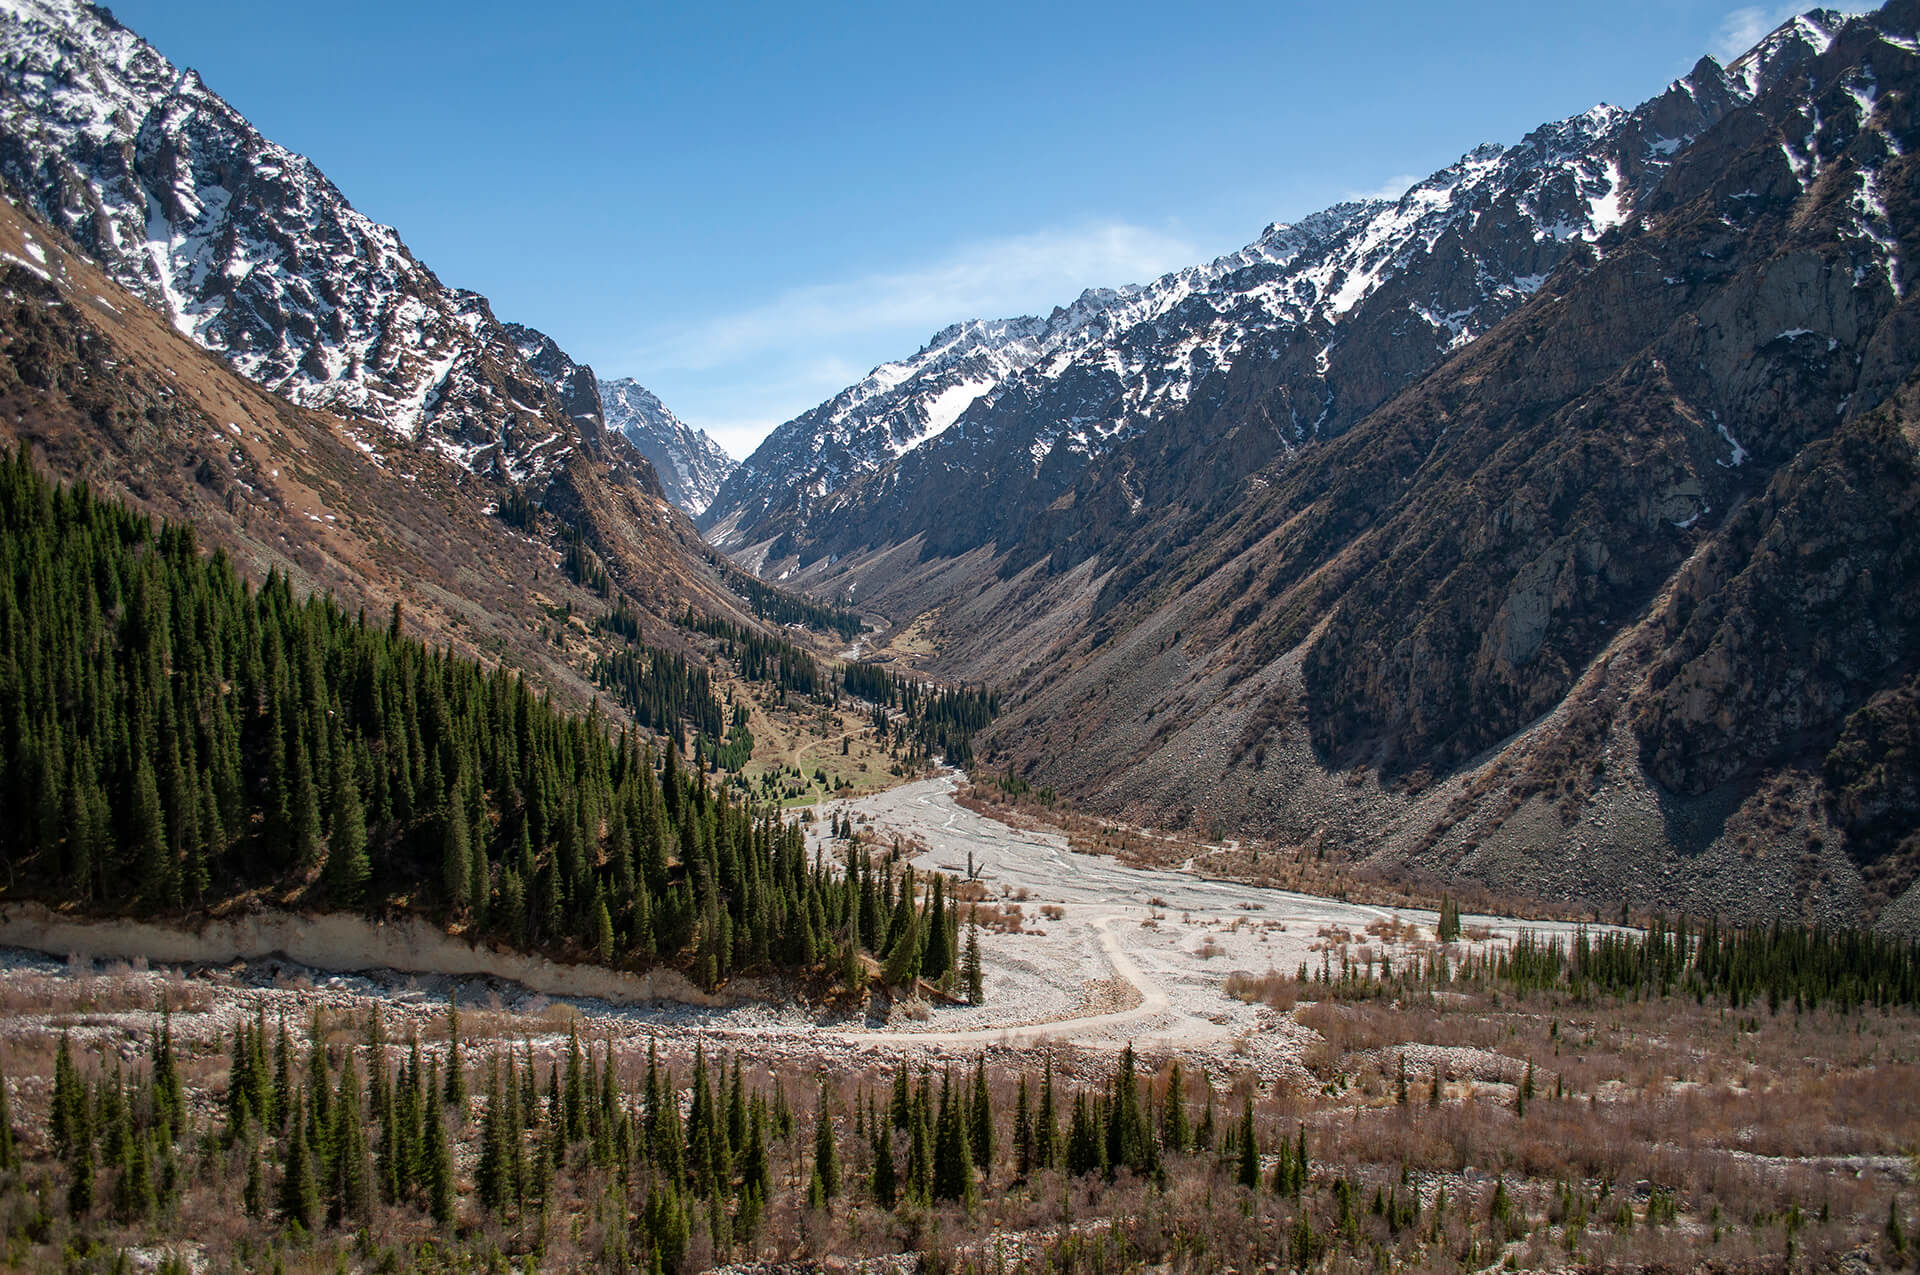 ala archa park narodowy trekking w kirgistanie